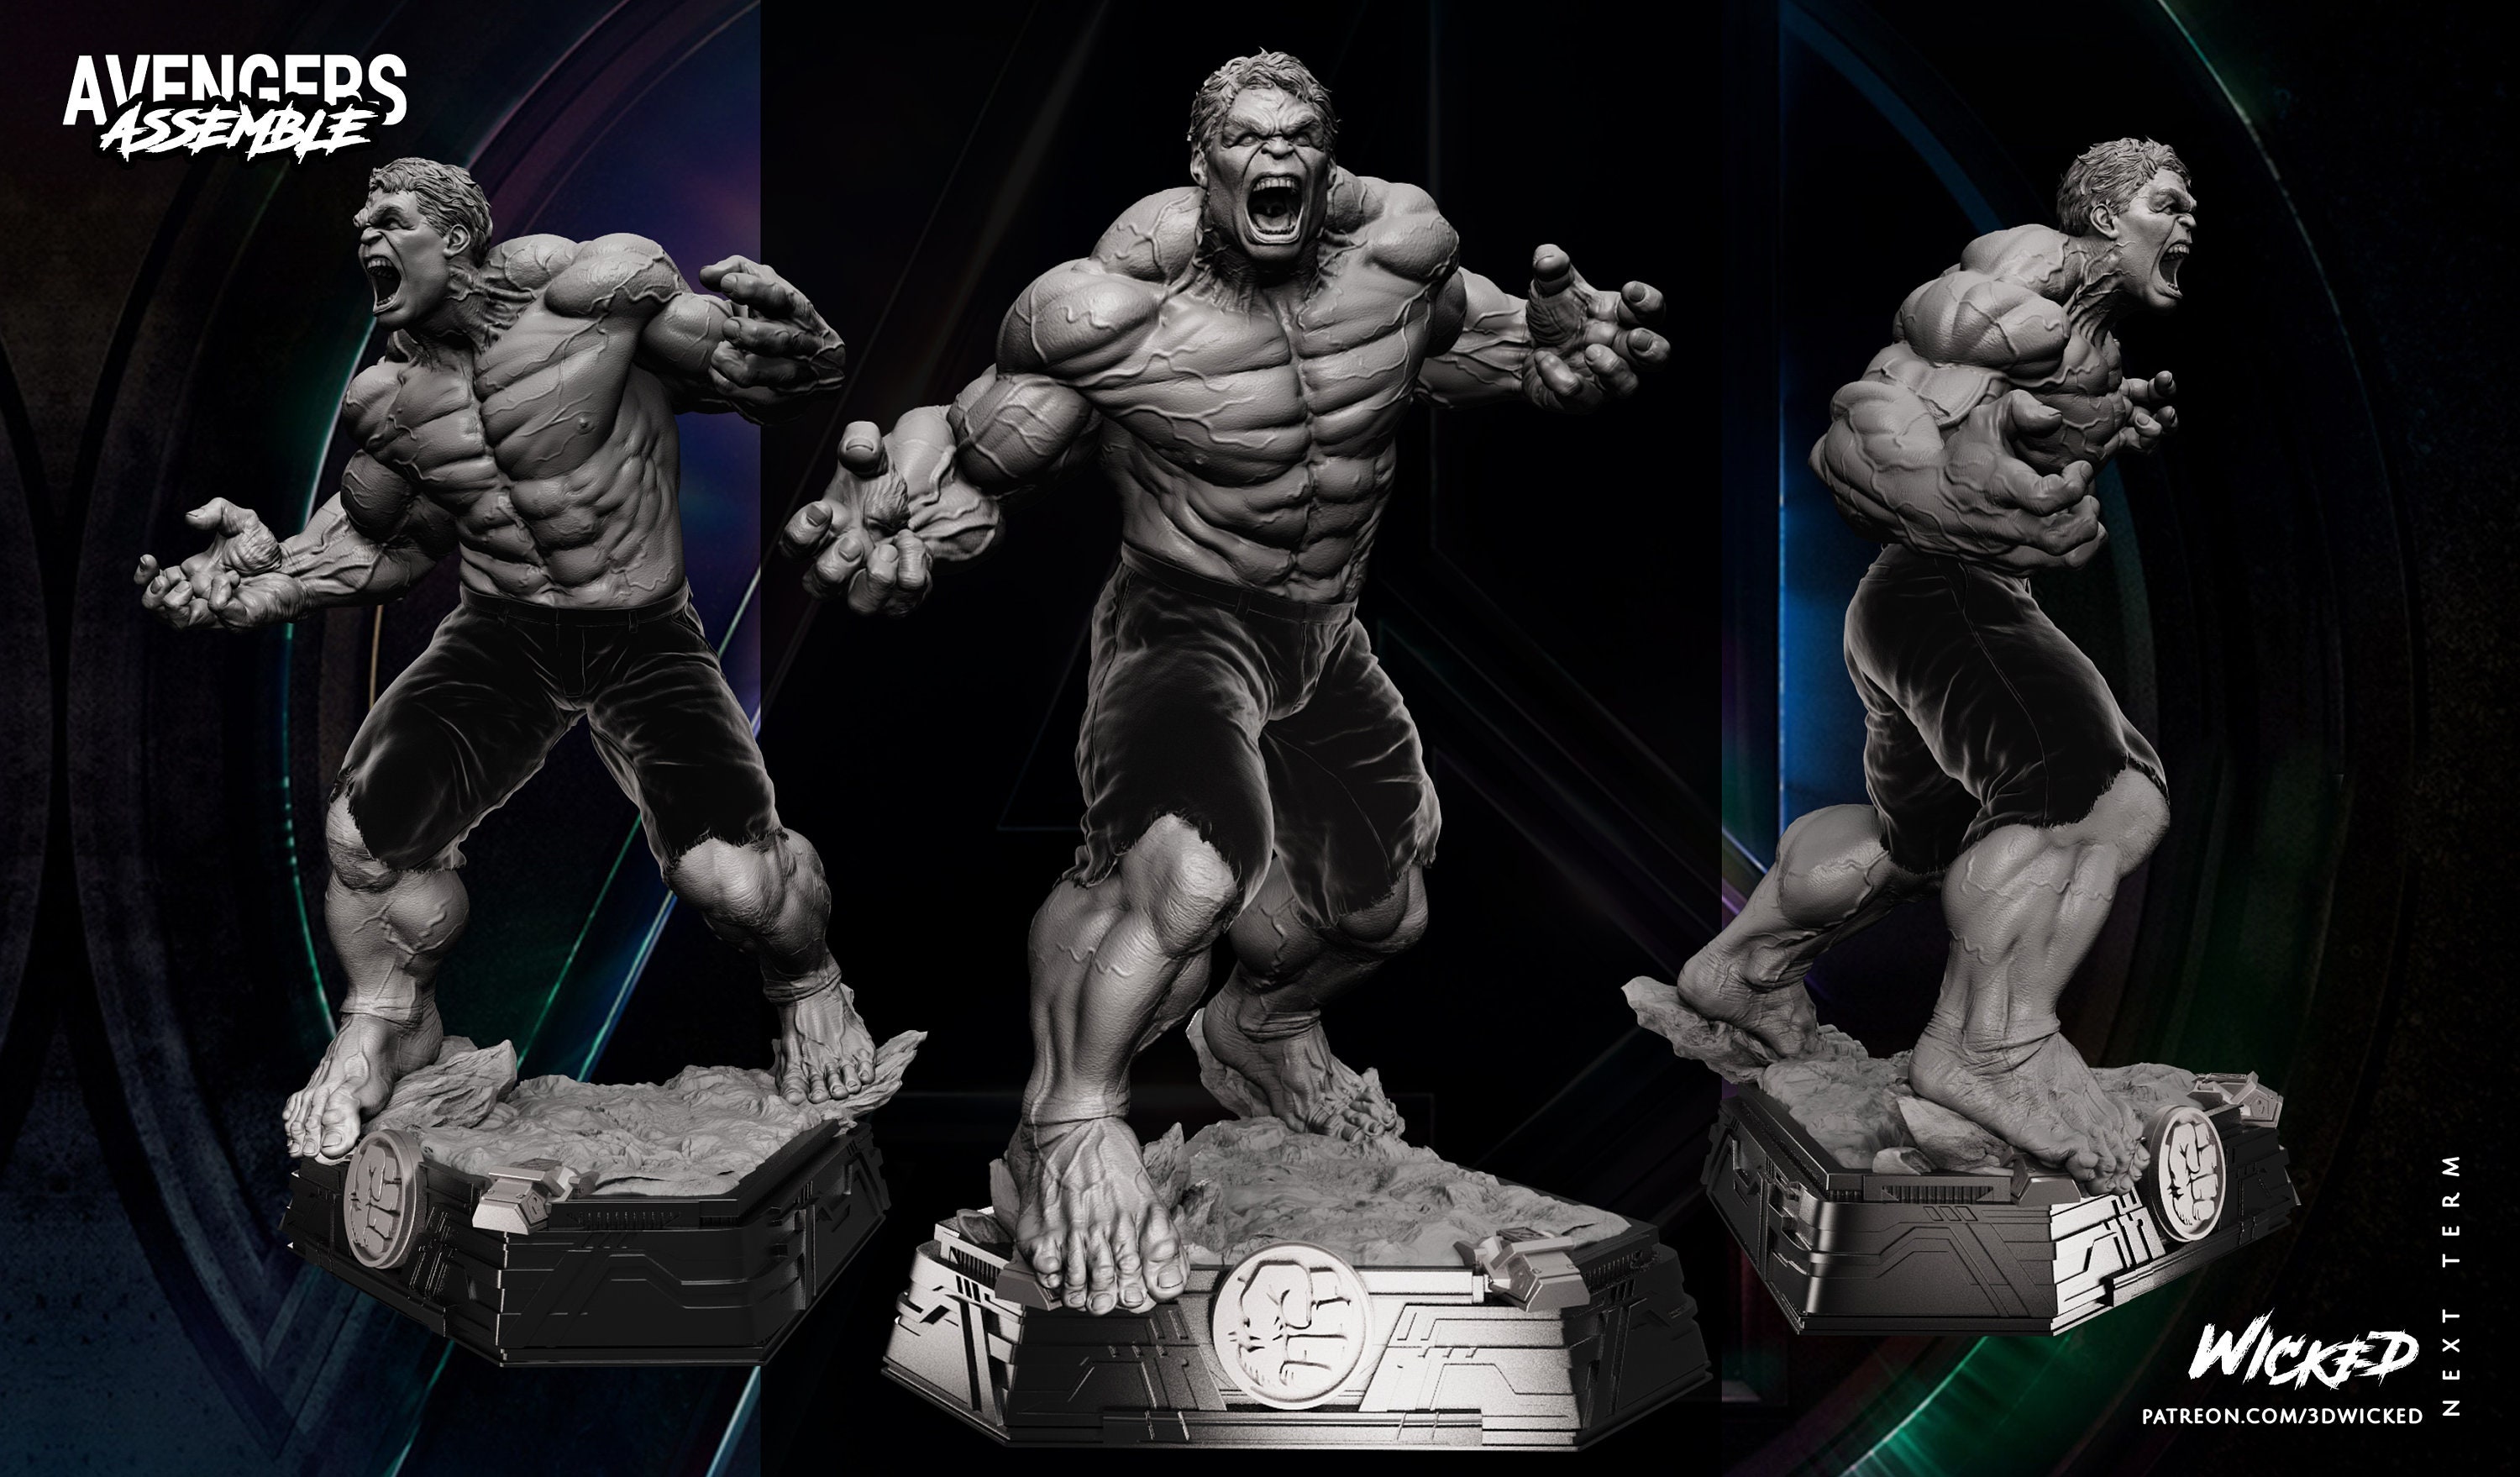 Hulk statuette Avengers résine Marvel Bruce Banner figurine